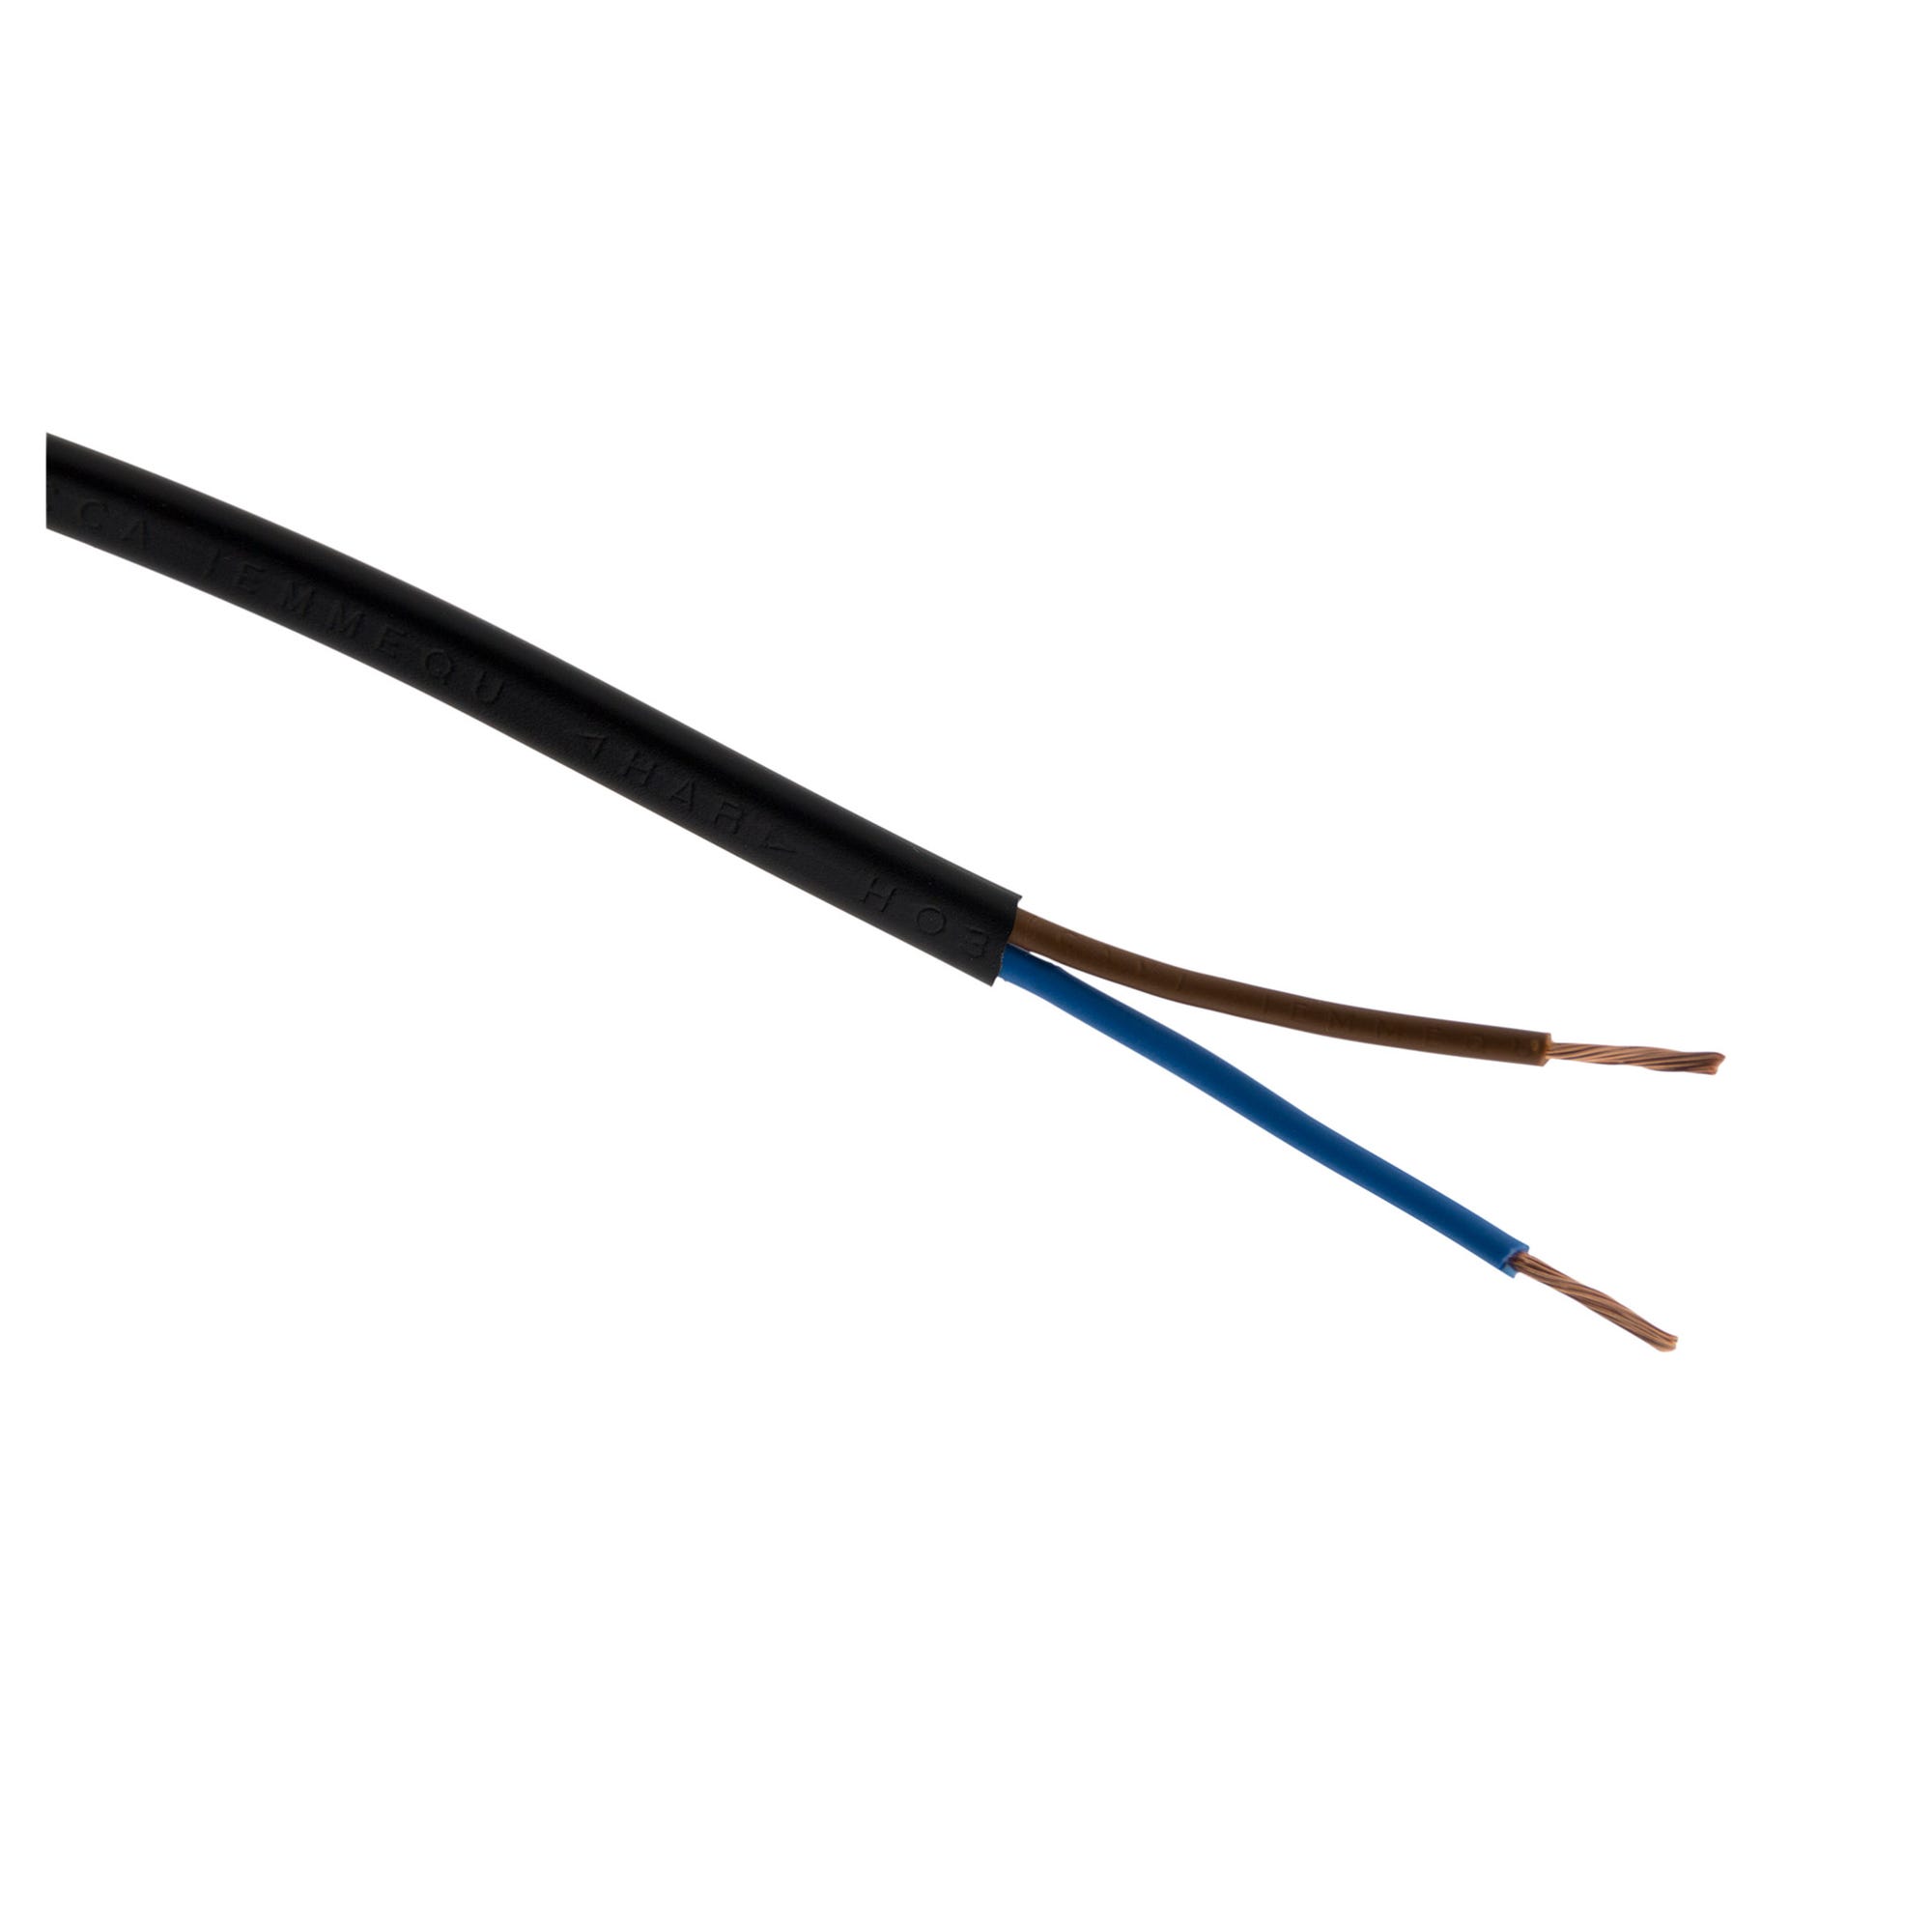 Câble d'alimentation électrique HO3VVH2-F 2x 0,75 Noir - 250m 0